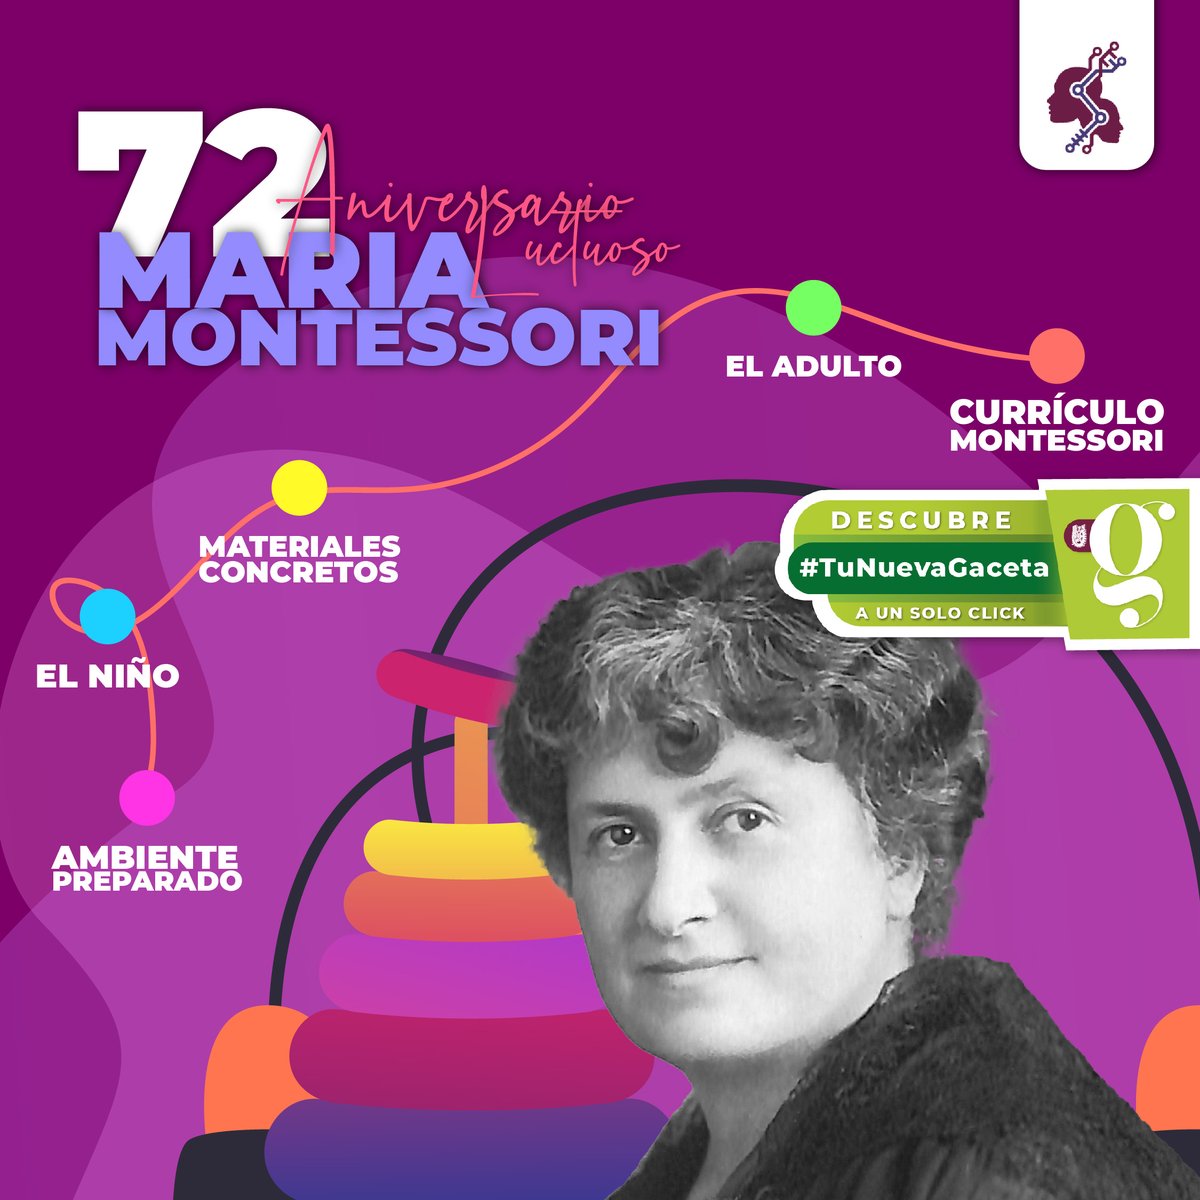 Celebramos el aniversario de la Dra. María Montessori, pionera de la educación. Su Método Montessori fomenta la independencia y el amor por el aprendizaje en niños alrededor del mundo. ¿Sabías que fue la primera mujer en Italia en obtener un doctorado en medicina?#MariaMontessori